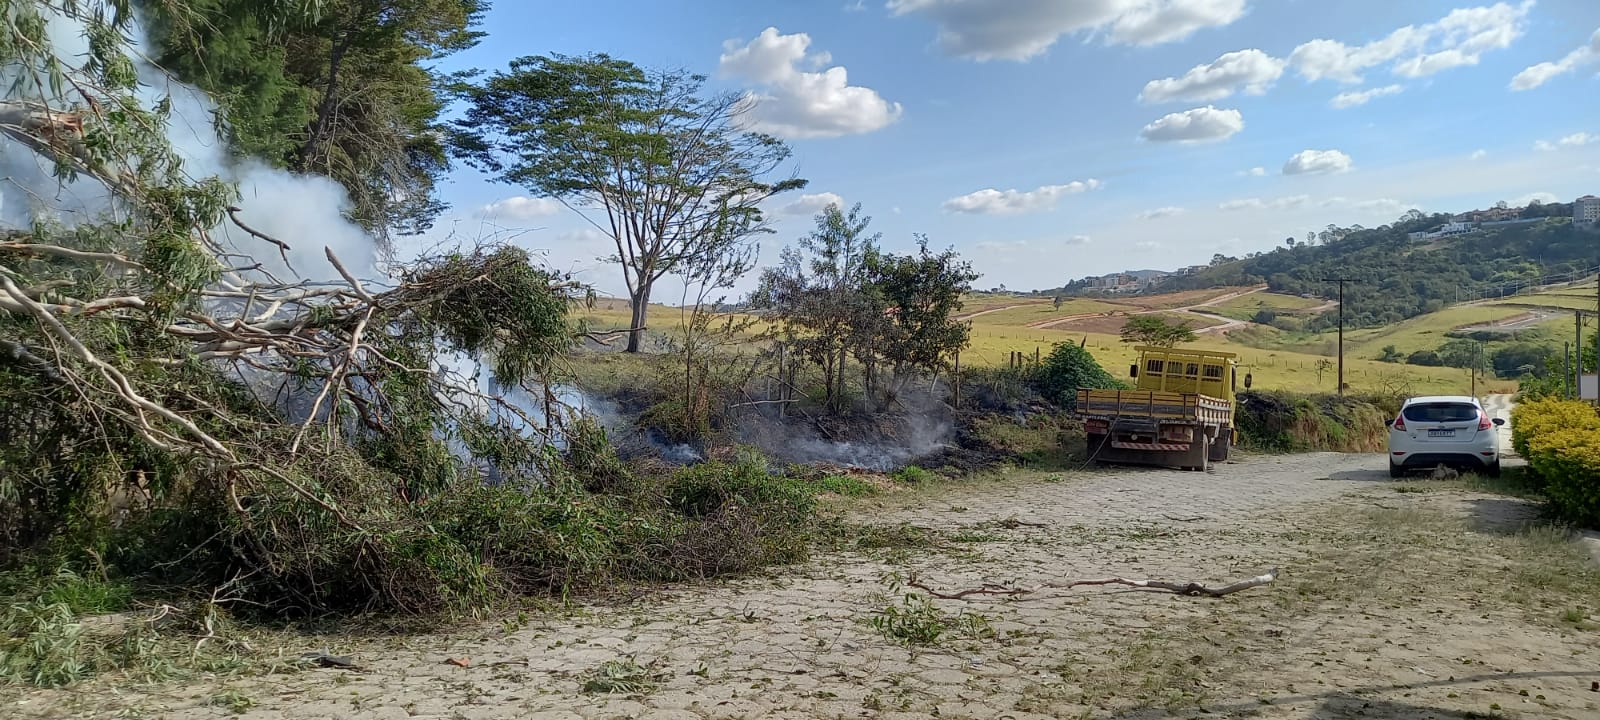 Incêndio em vegetação coloca em risco rede elétrica